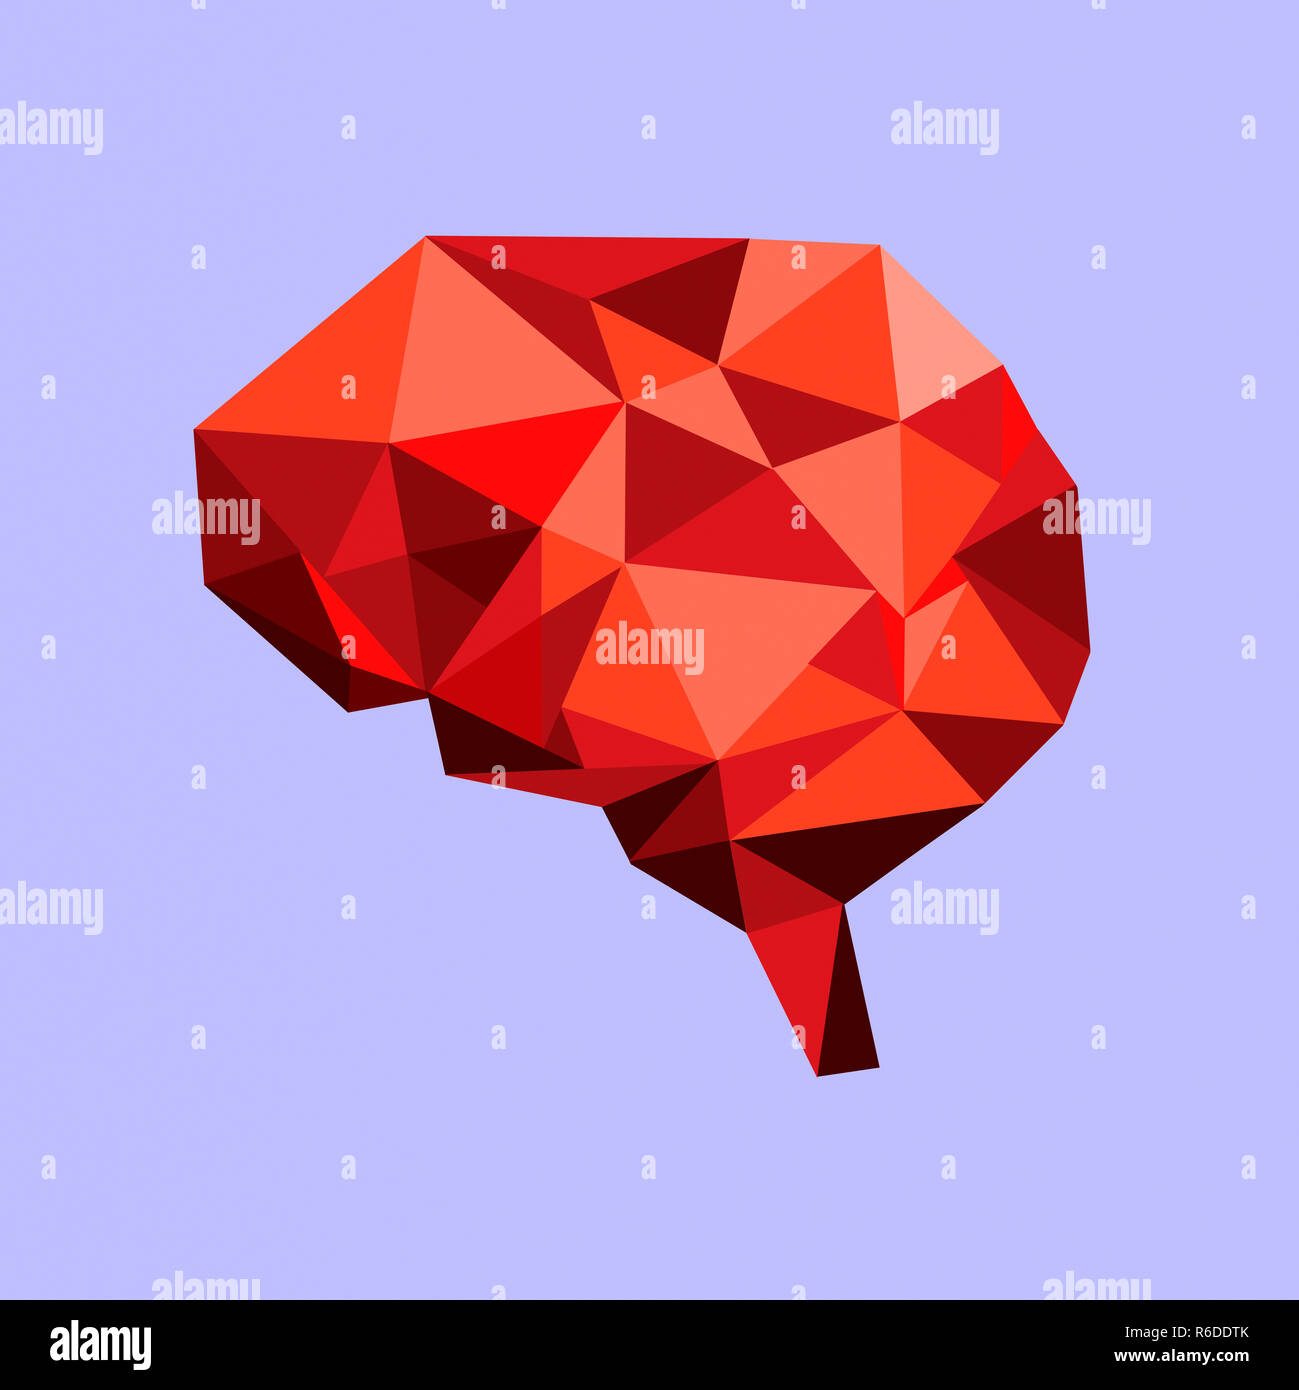 Poly faible cerveau humain, à base de formes géométriques angulaires Banque D'Images